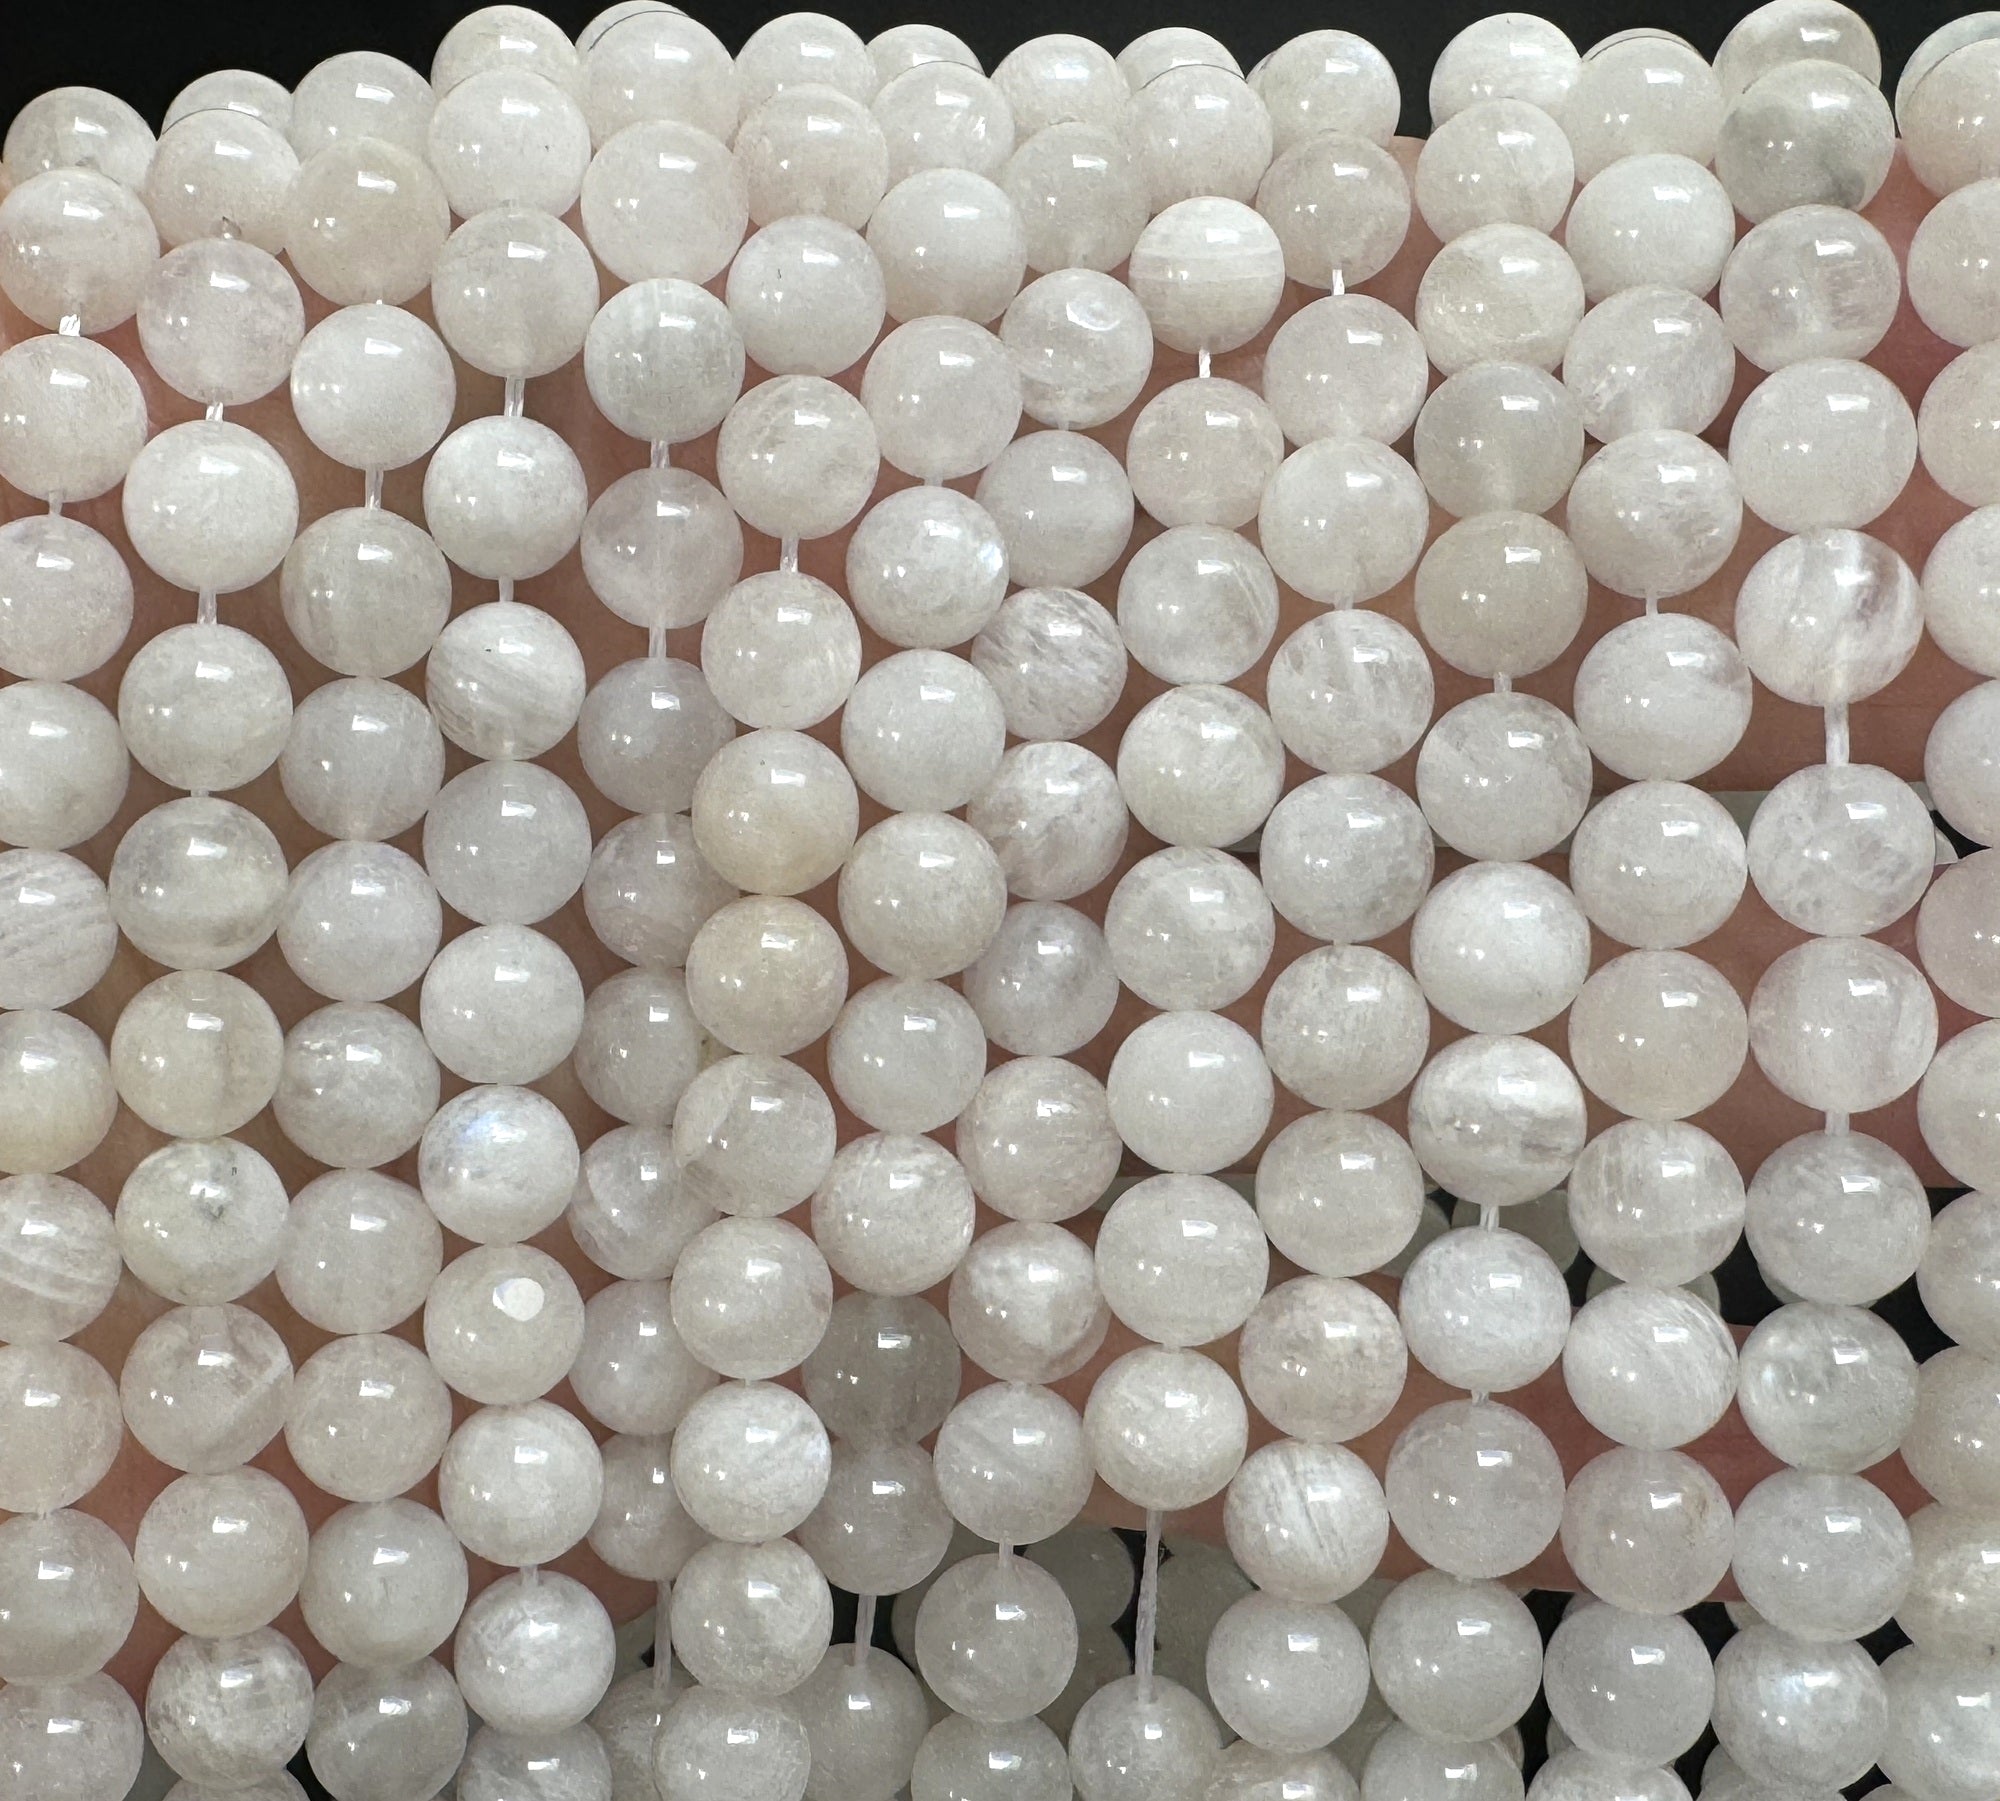 White Rainbow Moonstone 8mm round natural gemstone beads 15.5" strand